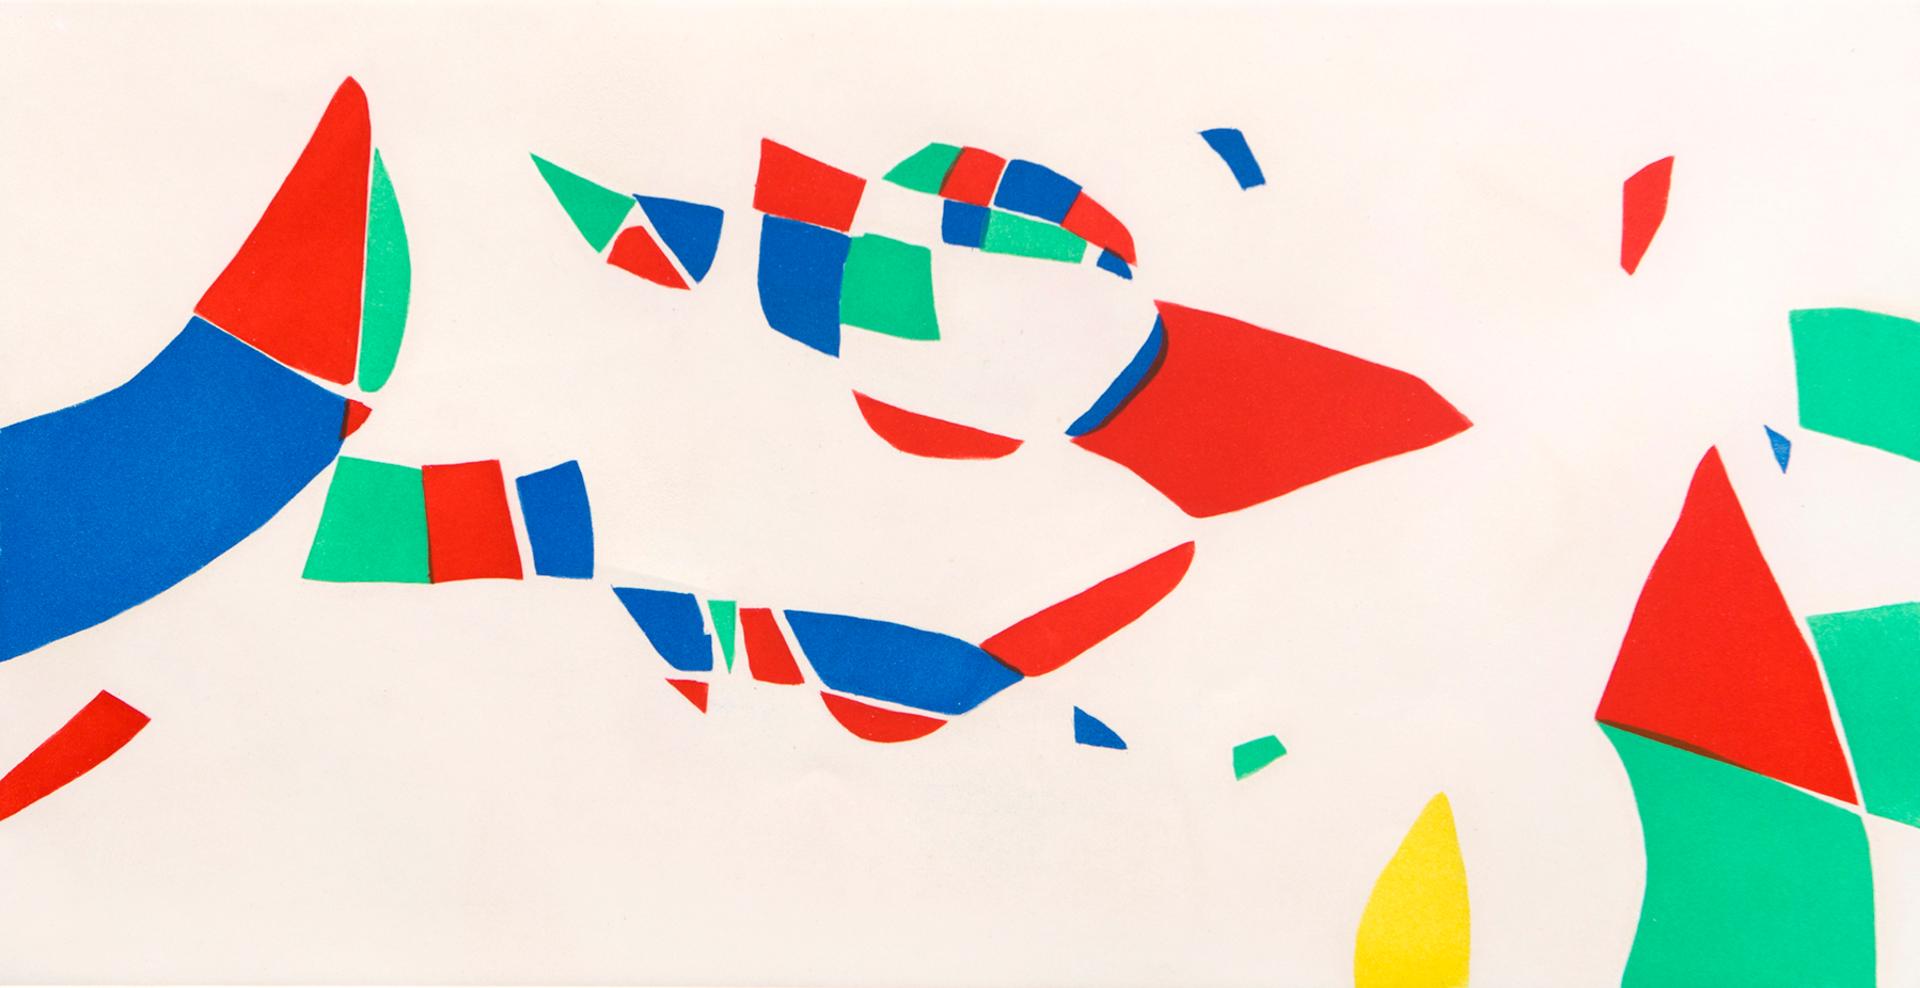 Joan Miró (1893-1983) - Gravures pour une exposition (Pl. 4) (Dupin 609), 1973